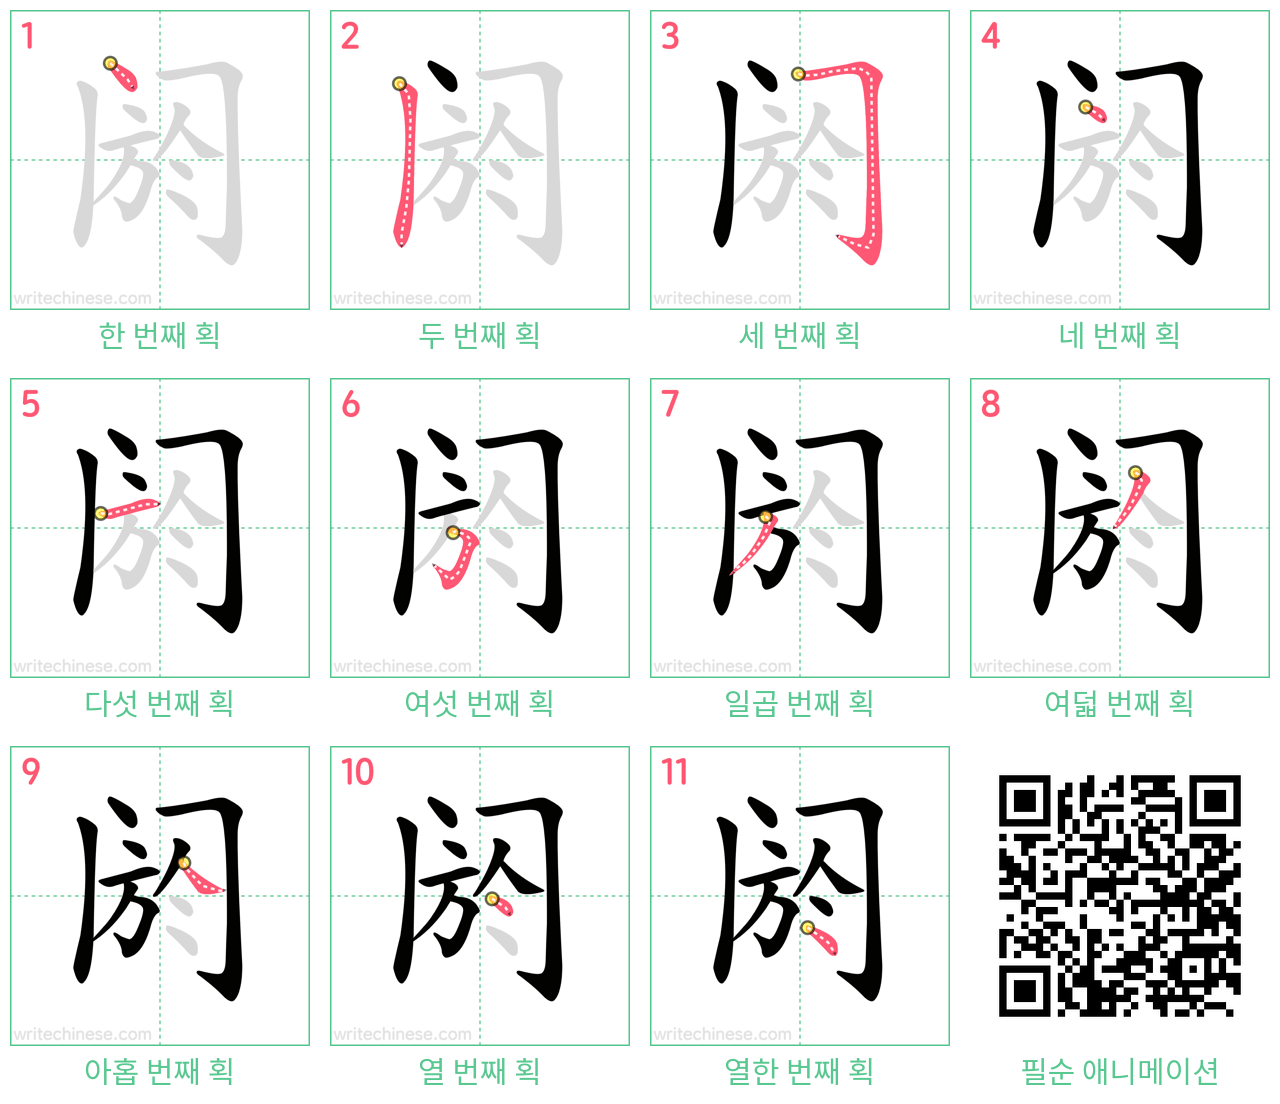 阏 step-by-step stroke order diagrams